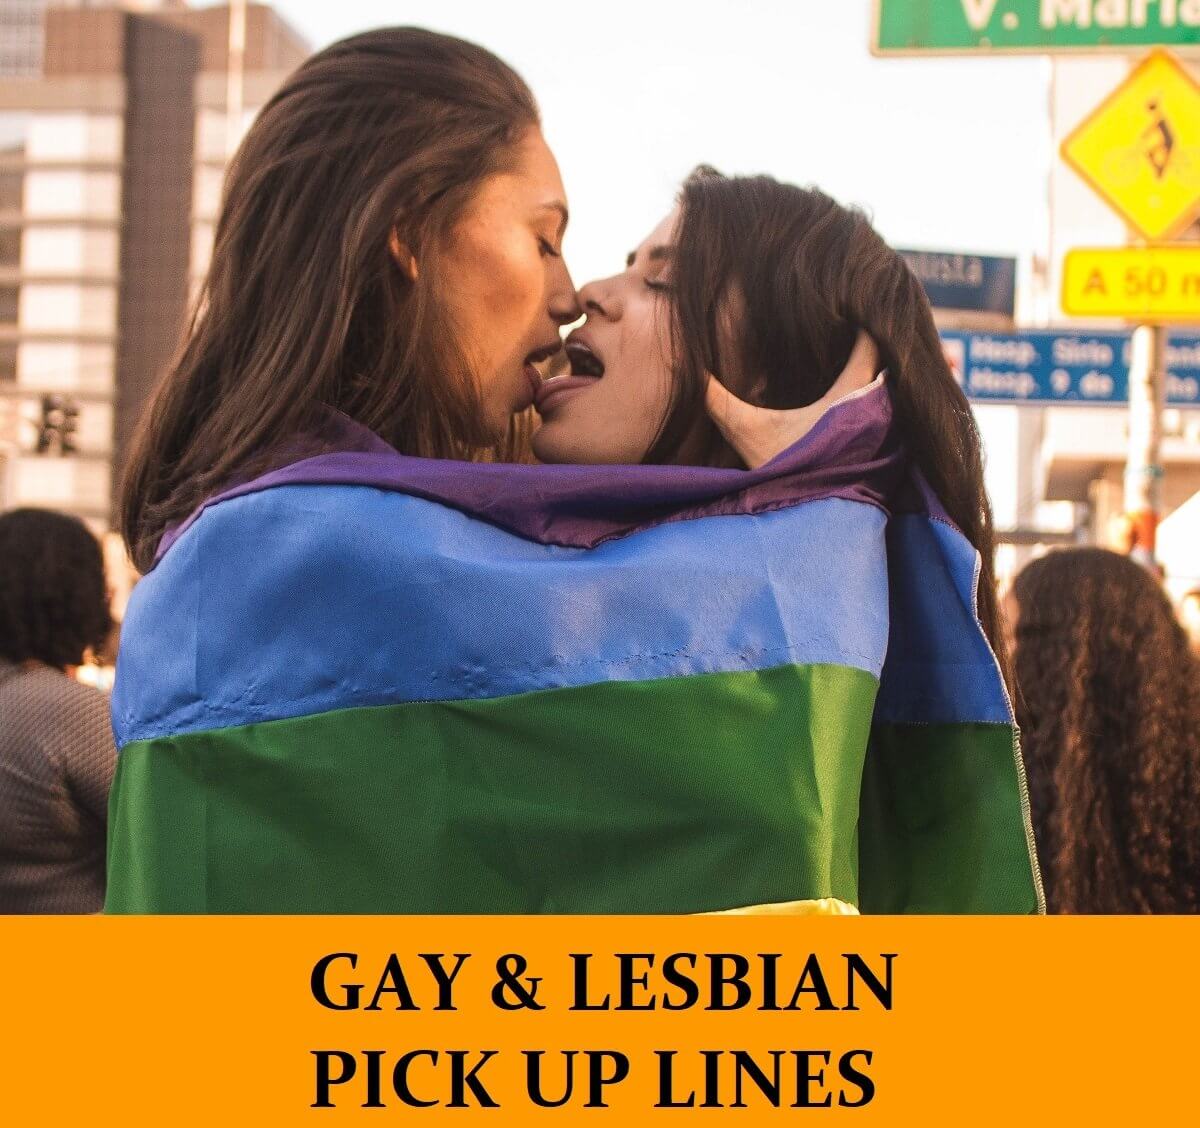 Lesbian girls ofer show pic